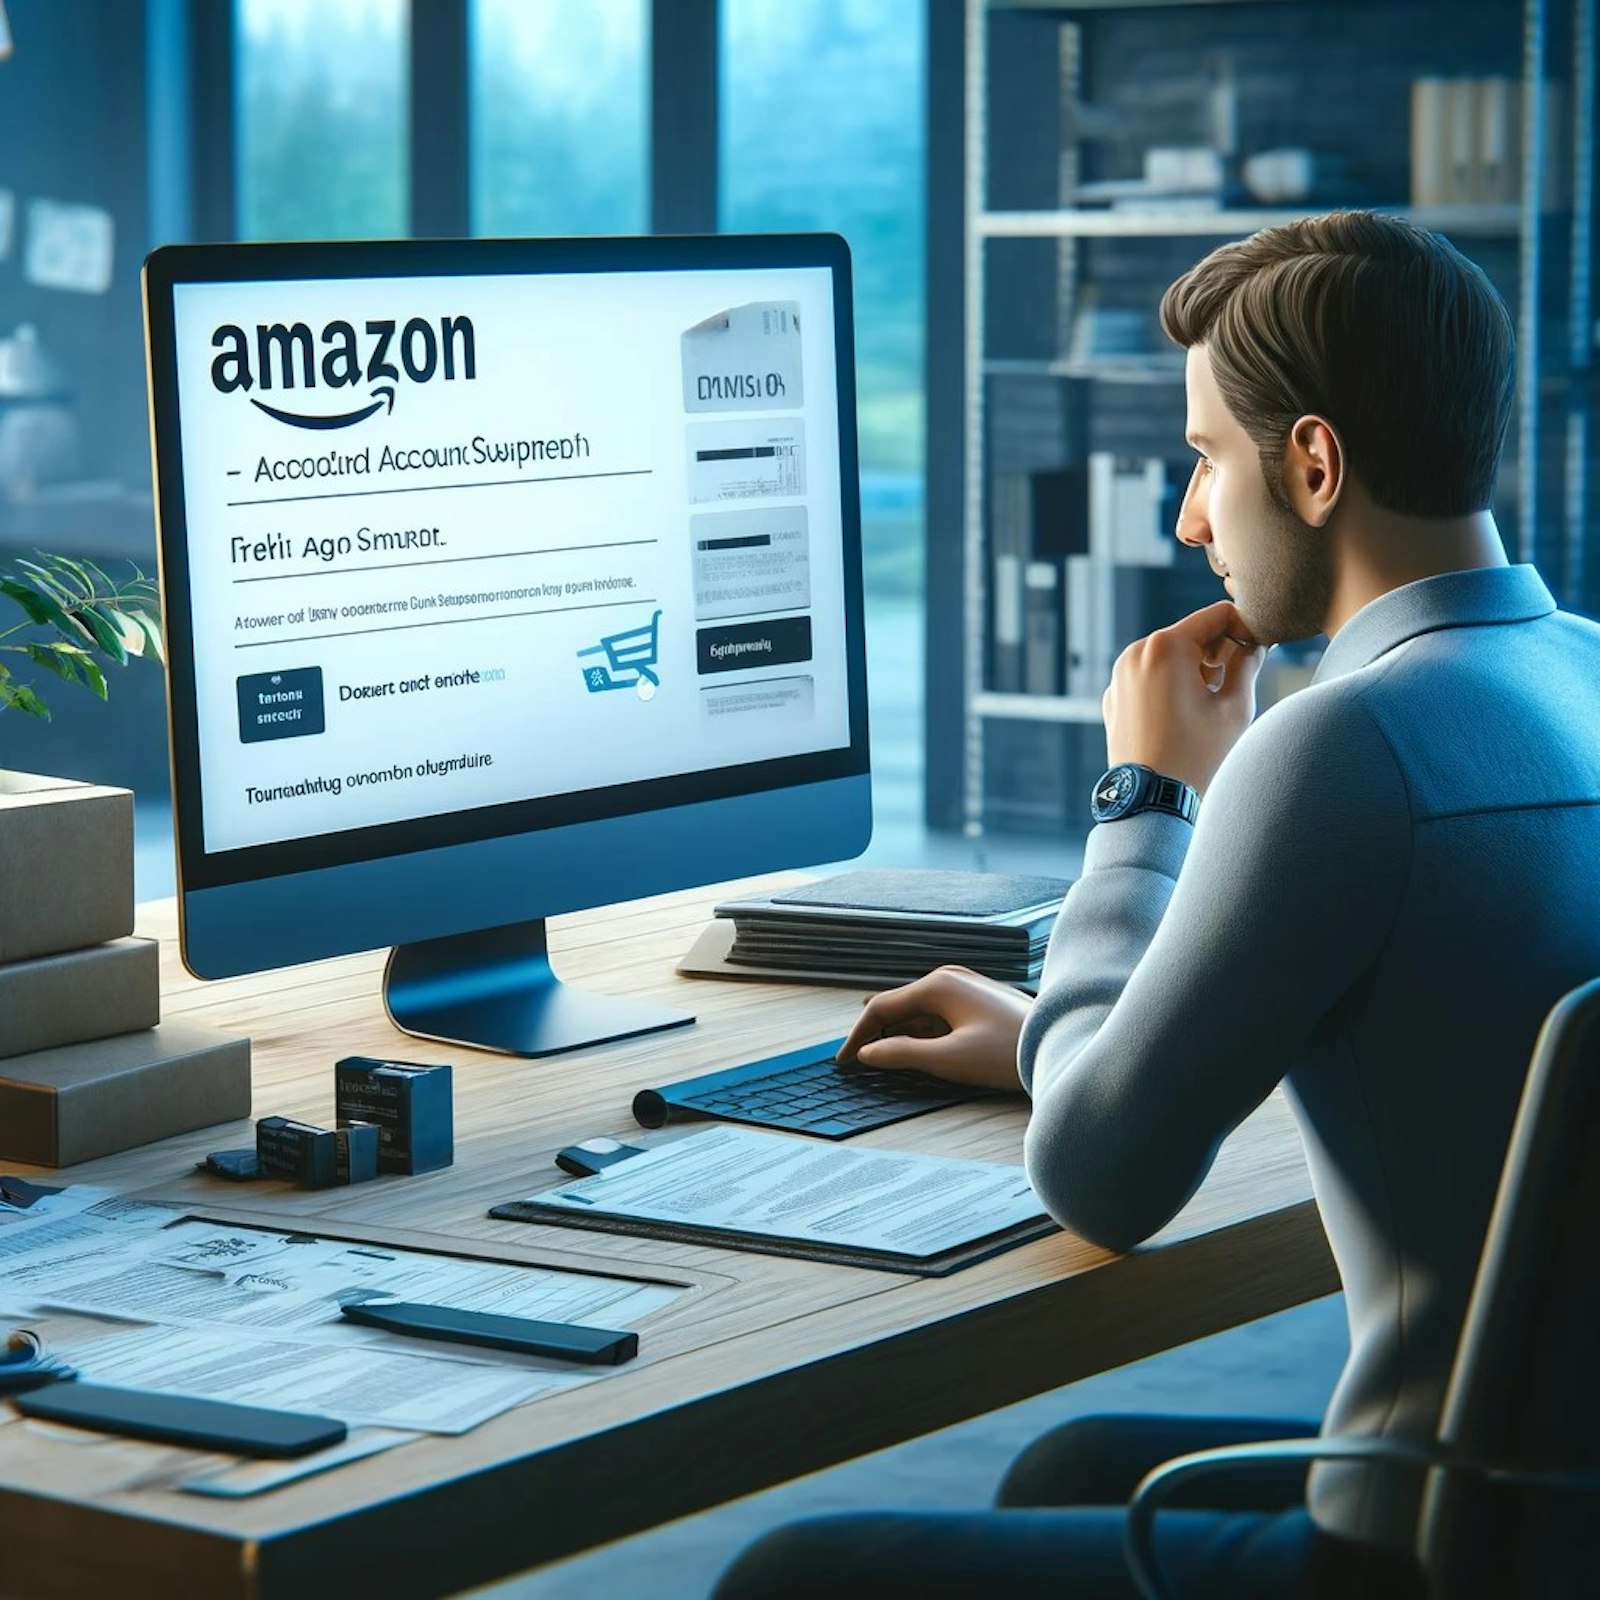 Illustration de vendeurs Amazon discutant des stratégies pour éviter la suspension, avec en arrière-plan un graphique de réclamations A-Z et un ordinateur affichant le logo Amazon.